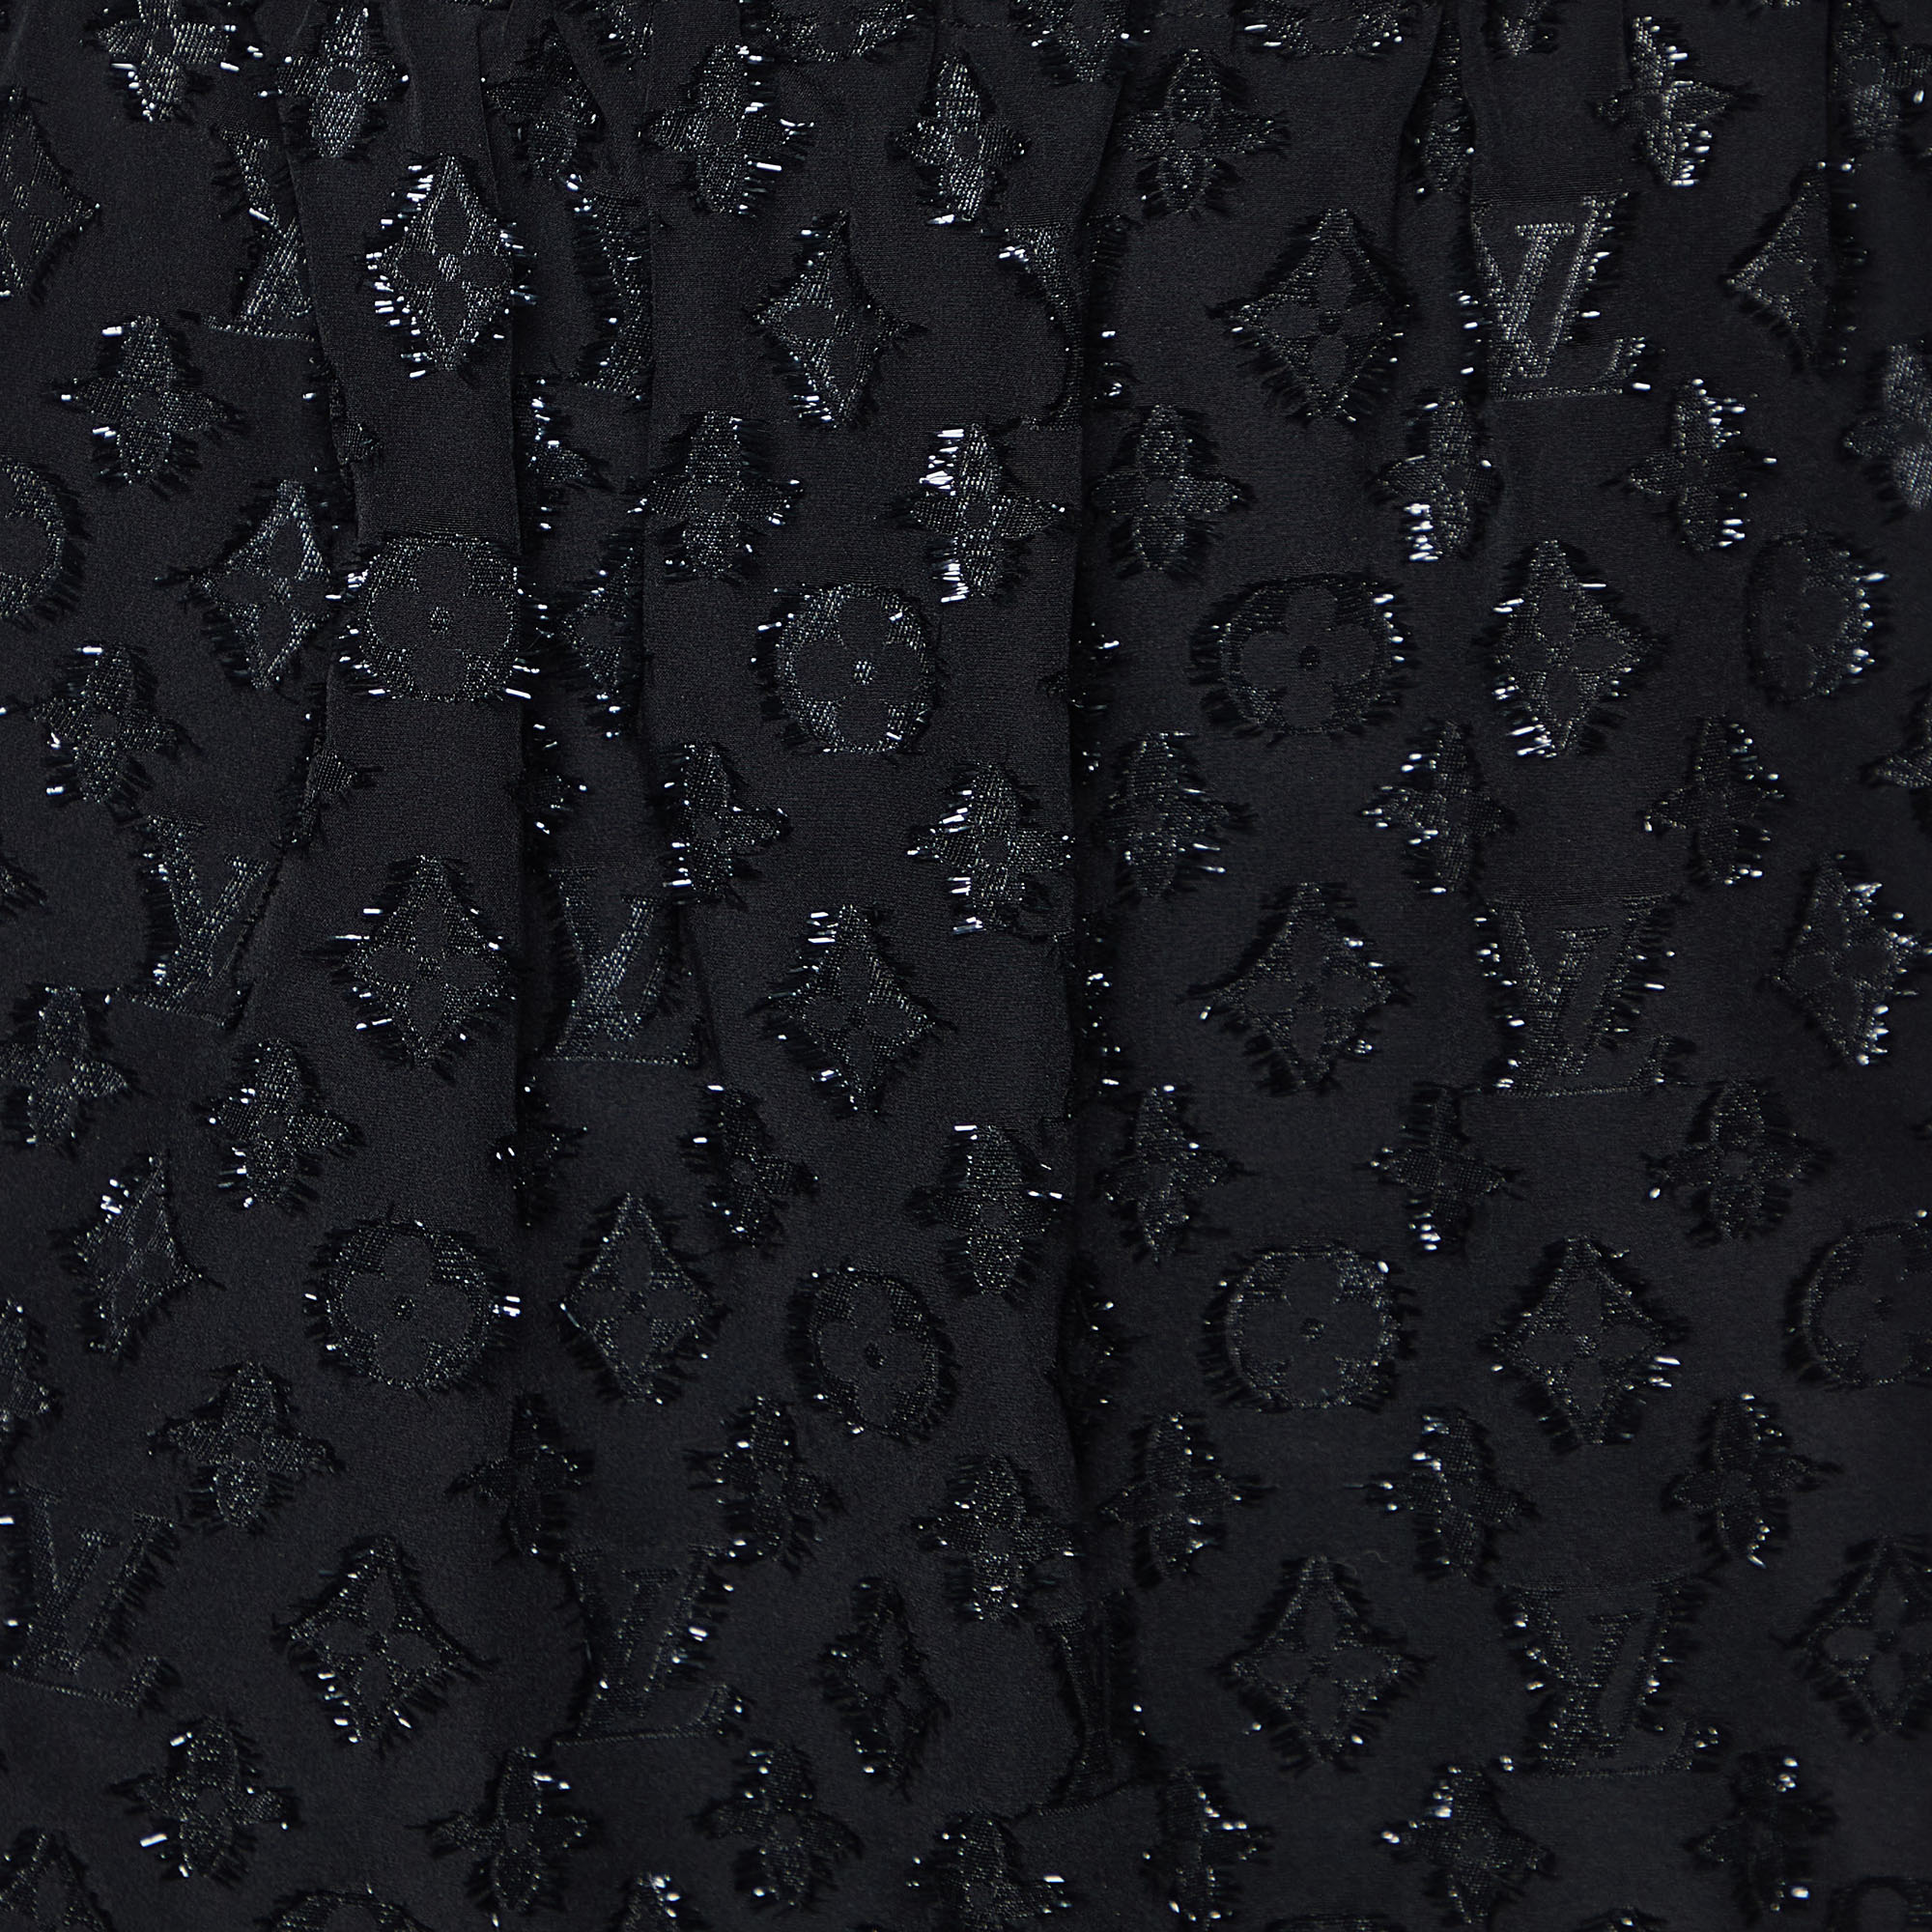 Louis Vuitton Black Monogram Fil Coupé Wrap Skirt M